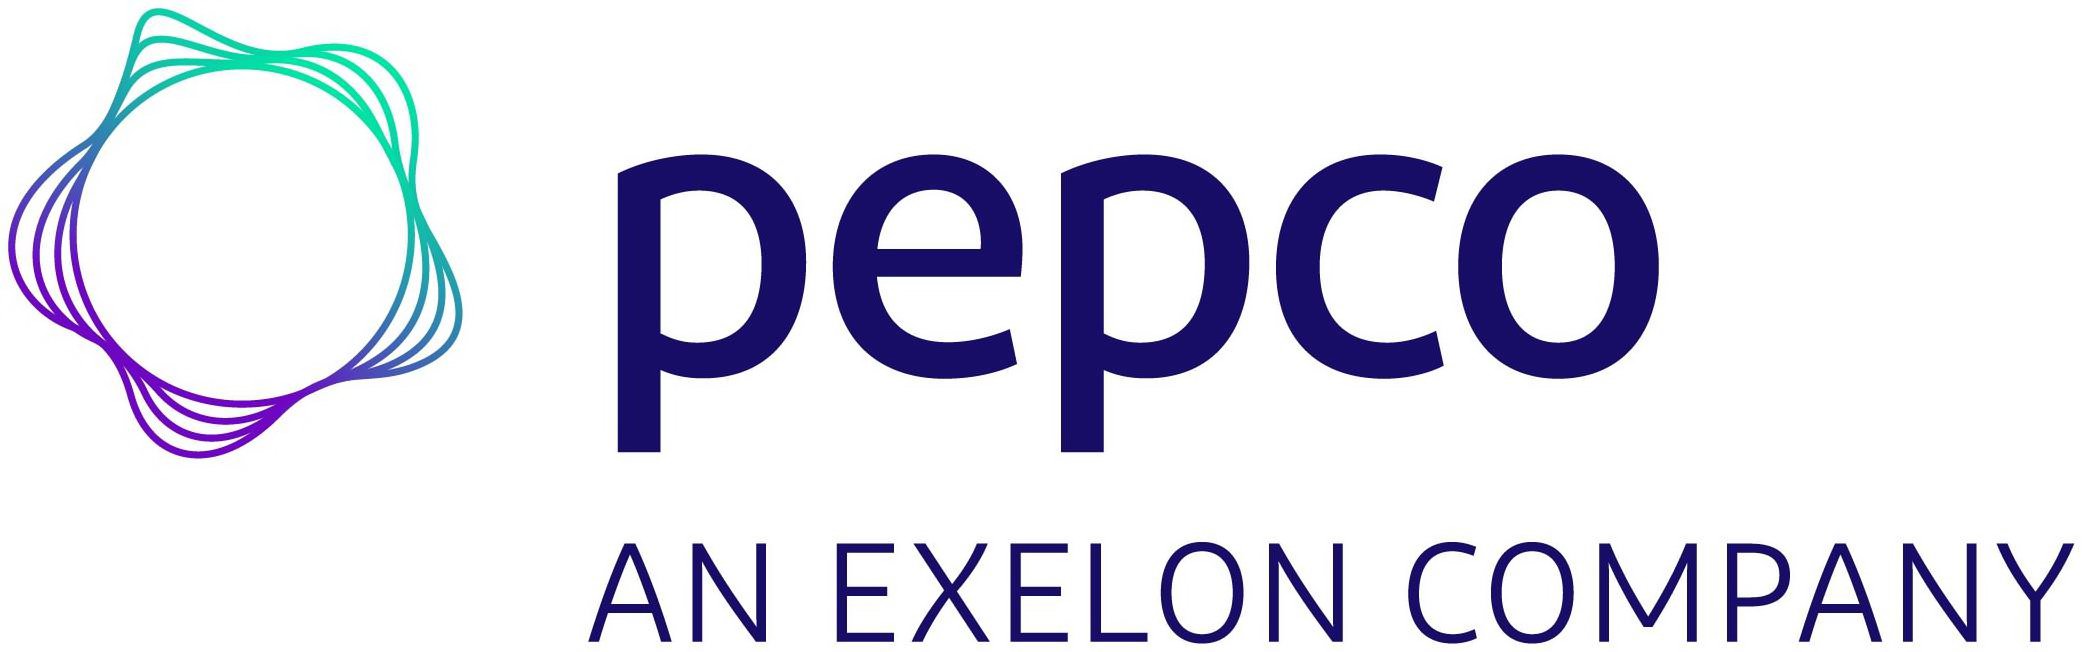 PEPCO AN EXELON COMPANY